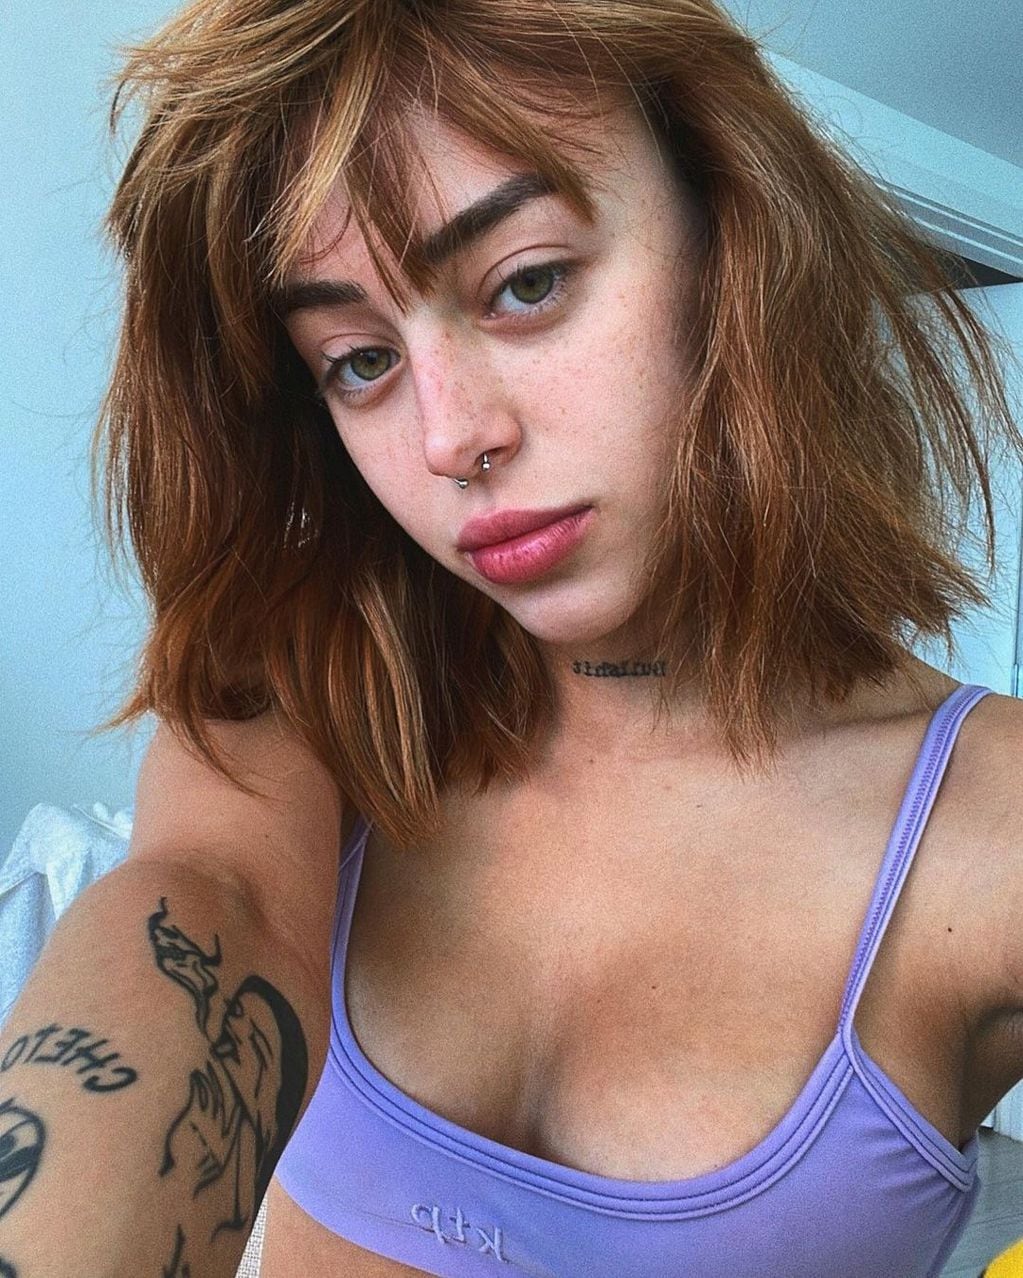 Nicki estrenó el nuevo corte de pelo en una selfie con un top lila.